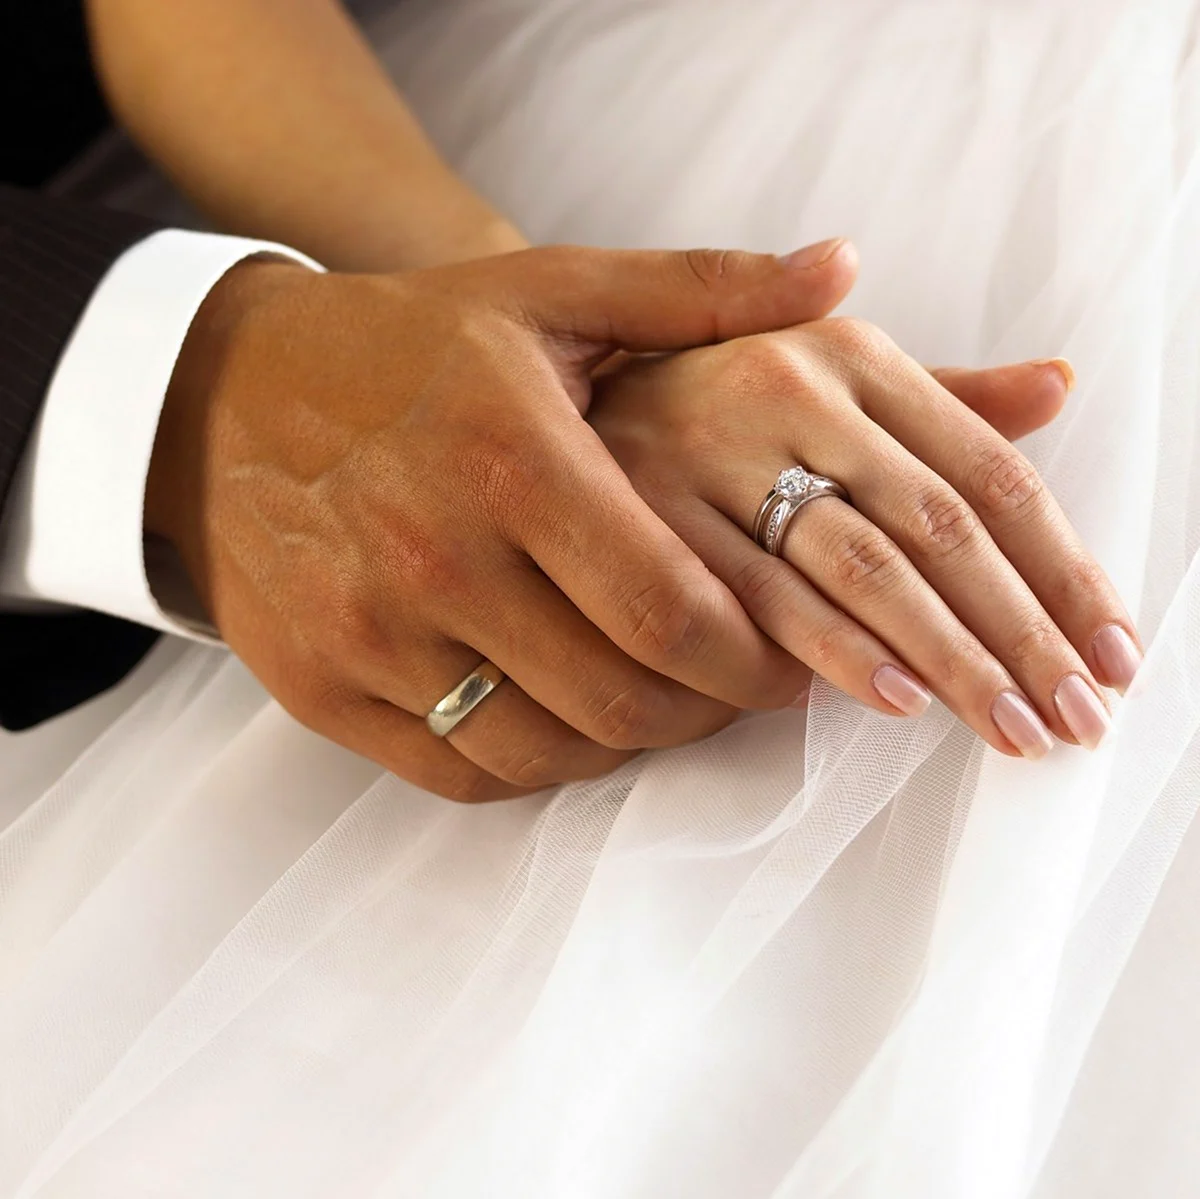 Кольца для венчания в церкви